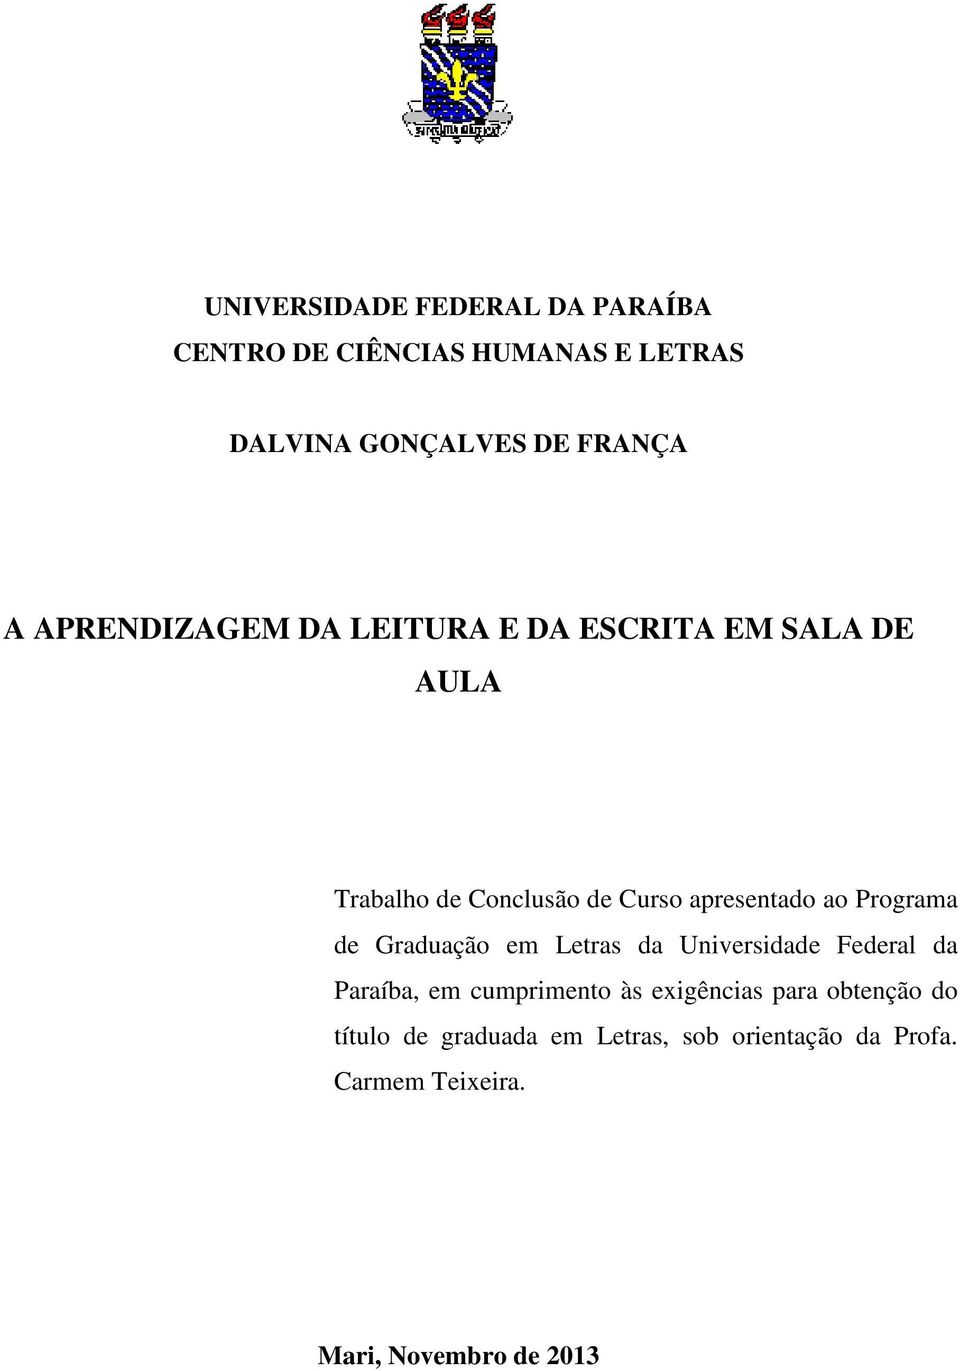 Programa de Graduação em Letras da Universidade Federal da Paraíba, em cumprimento às exigências para